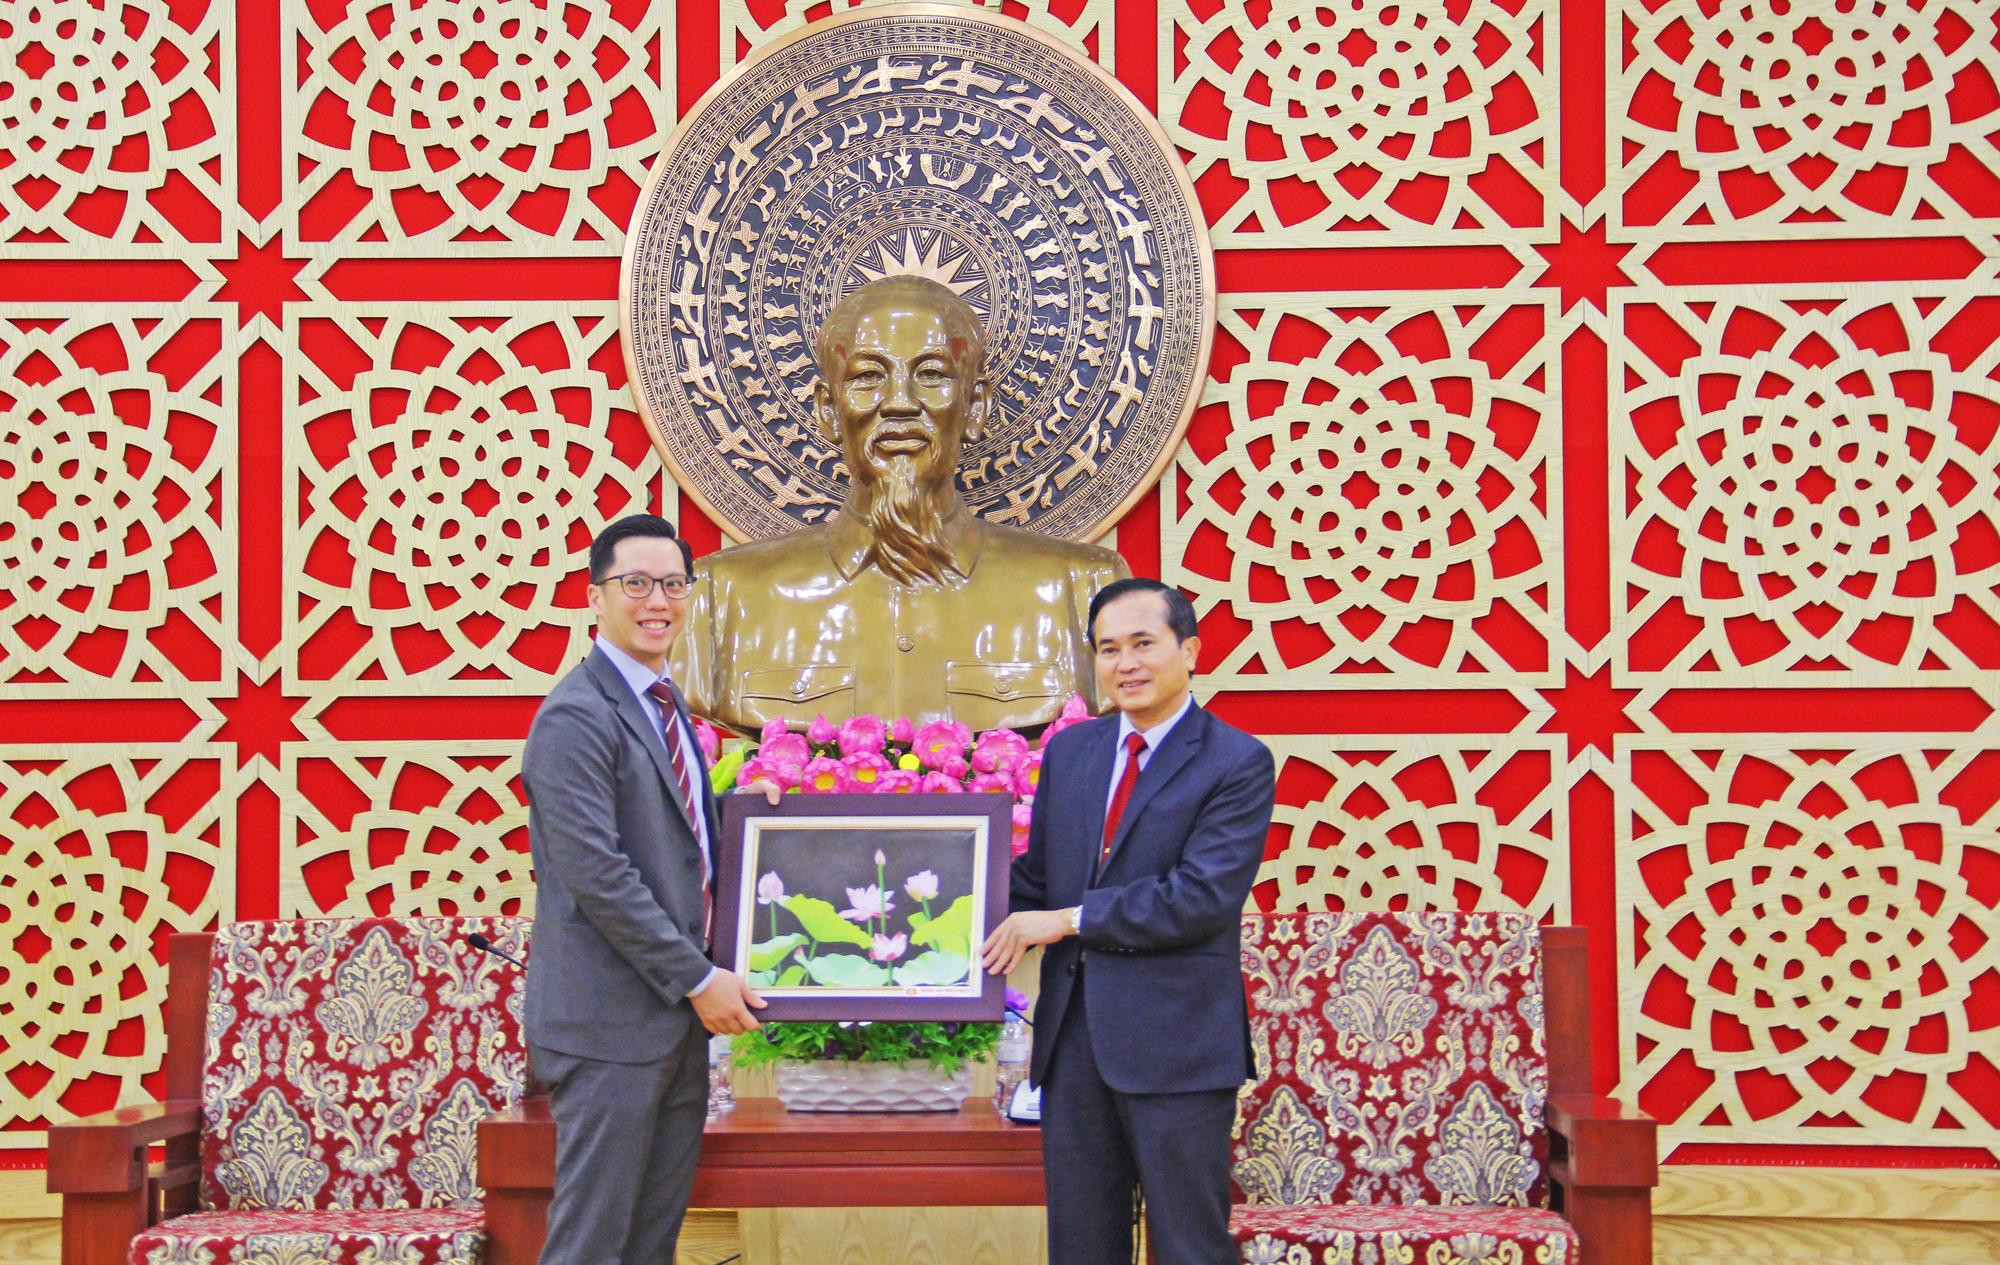 Đồng chí Lê Ngọc Hoa đại diện UBND tặng quà kỷ niệm tới ngài Đại sứcùng đoàn công tác. Ảnh: Thanh Quỳnh